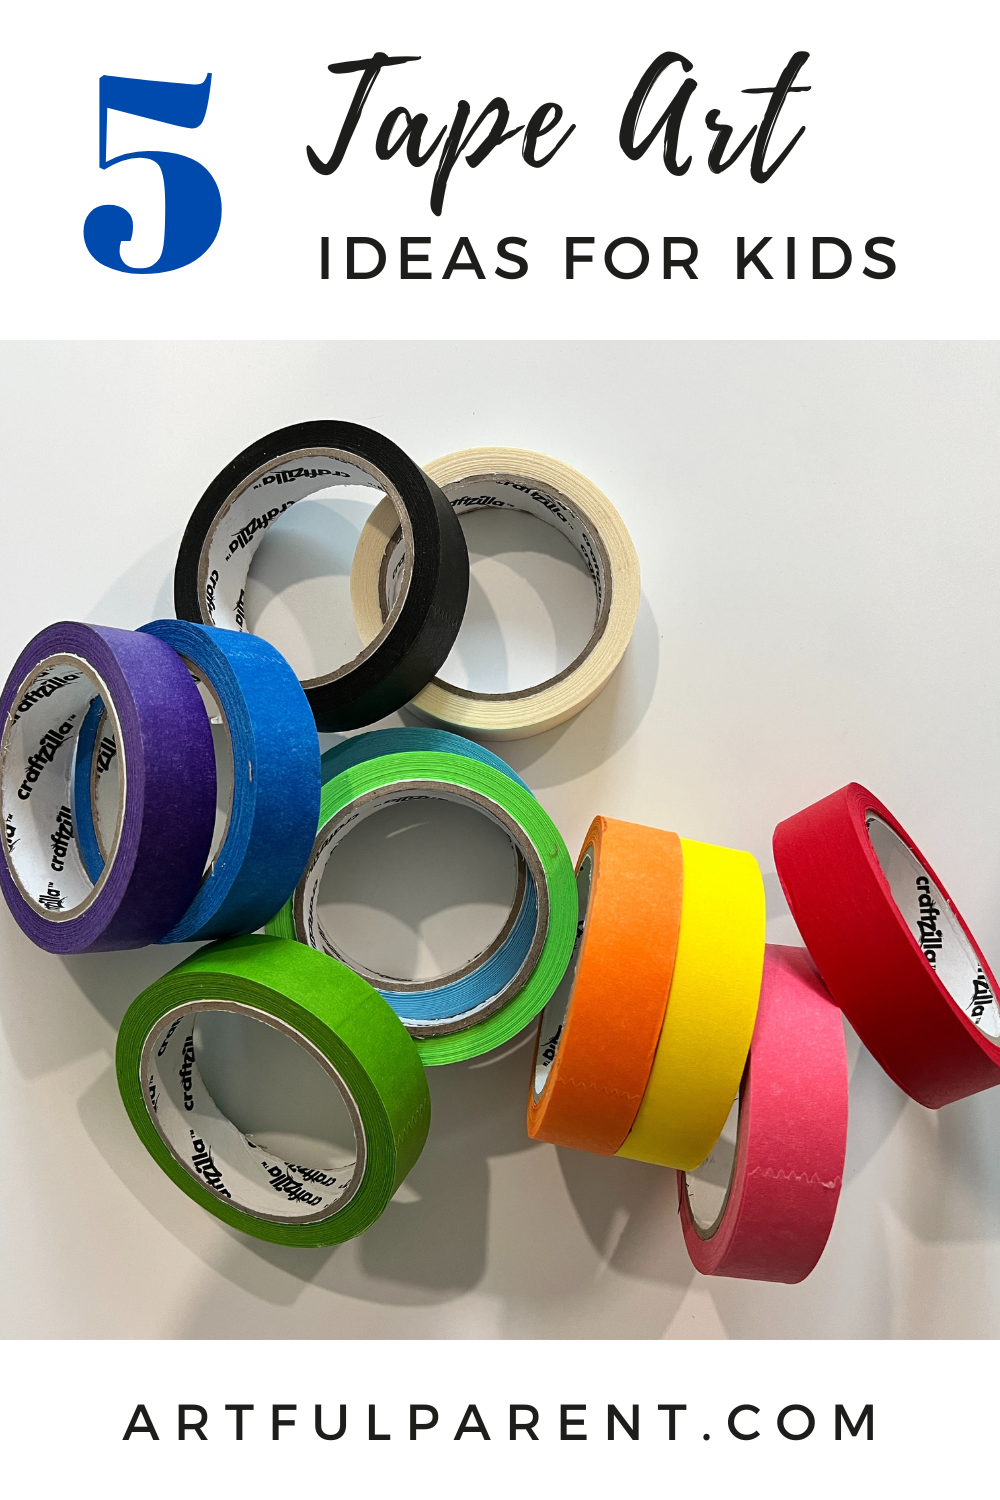 5 Tape Art Ideas for Kids